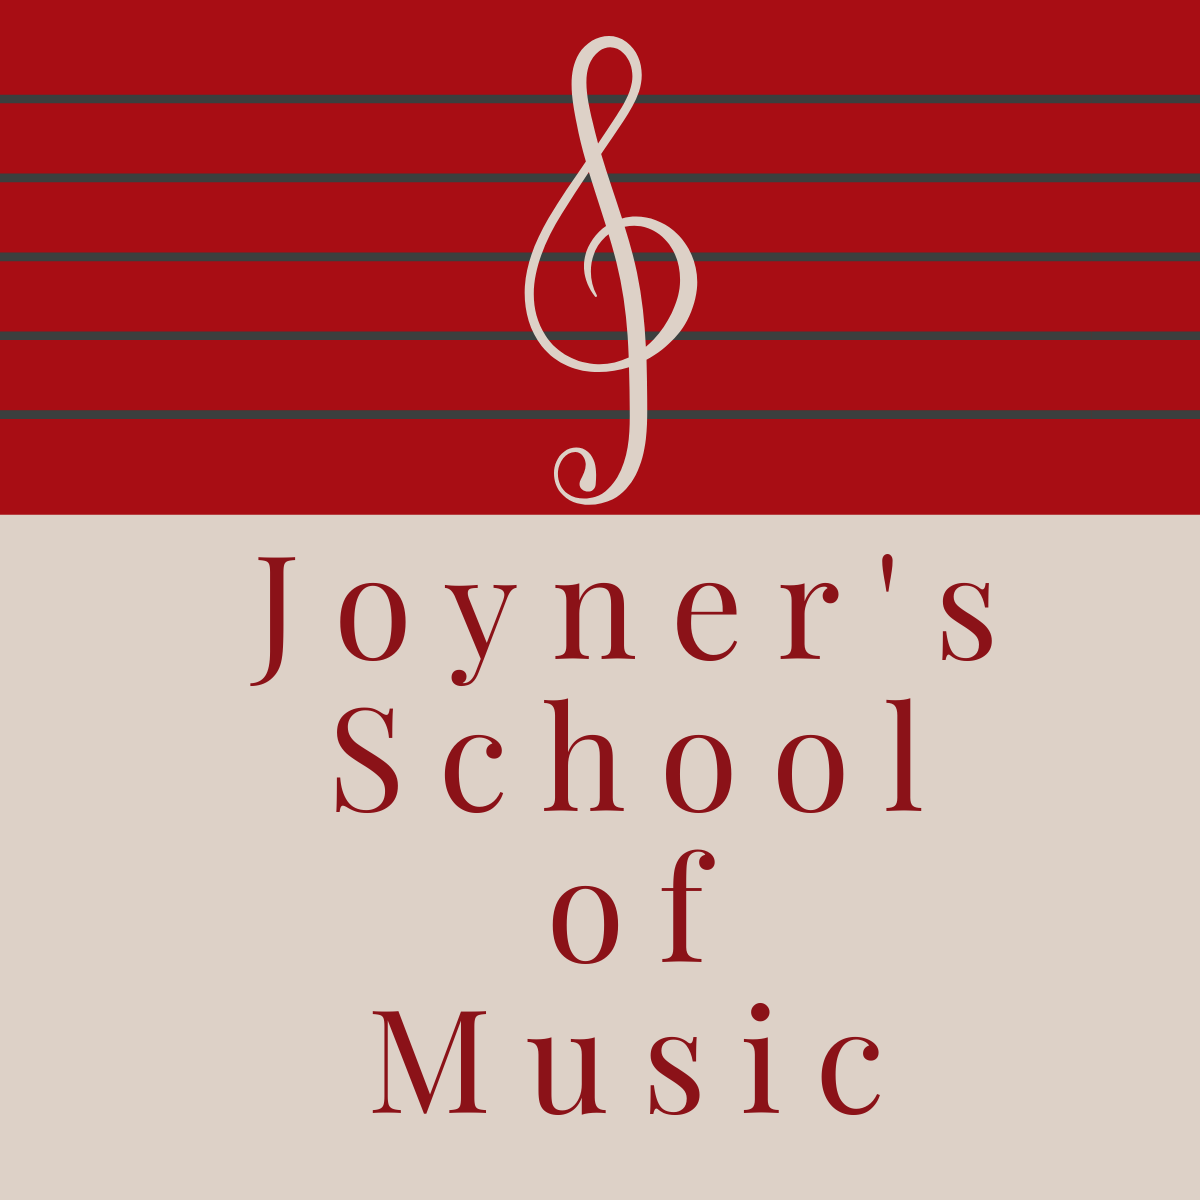 Joyner's School of Music (SwanoDown Report)